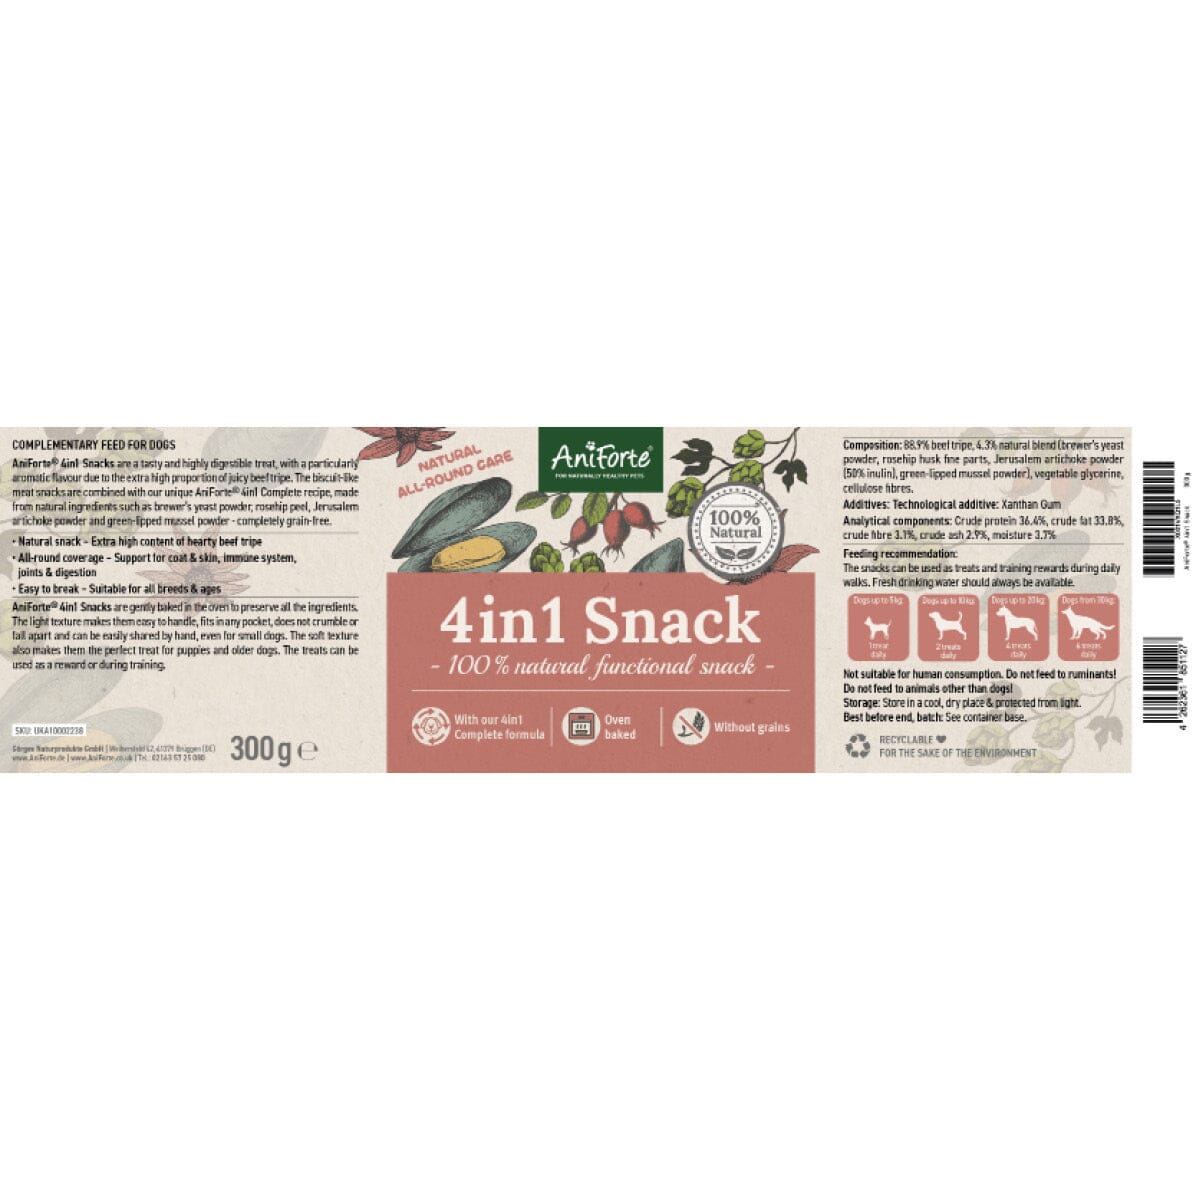 4in1 Snack - AniForte UK